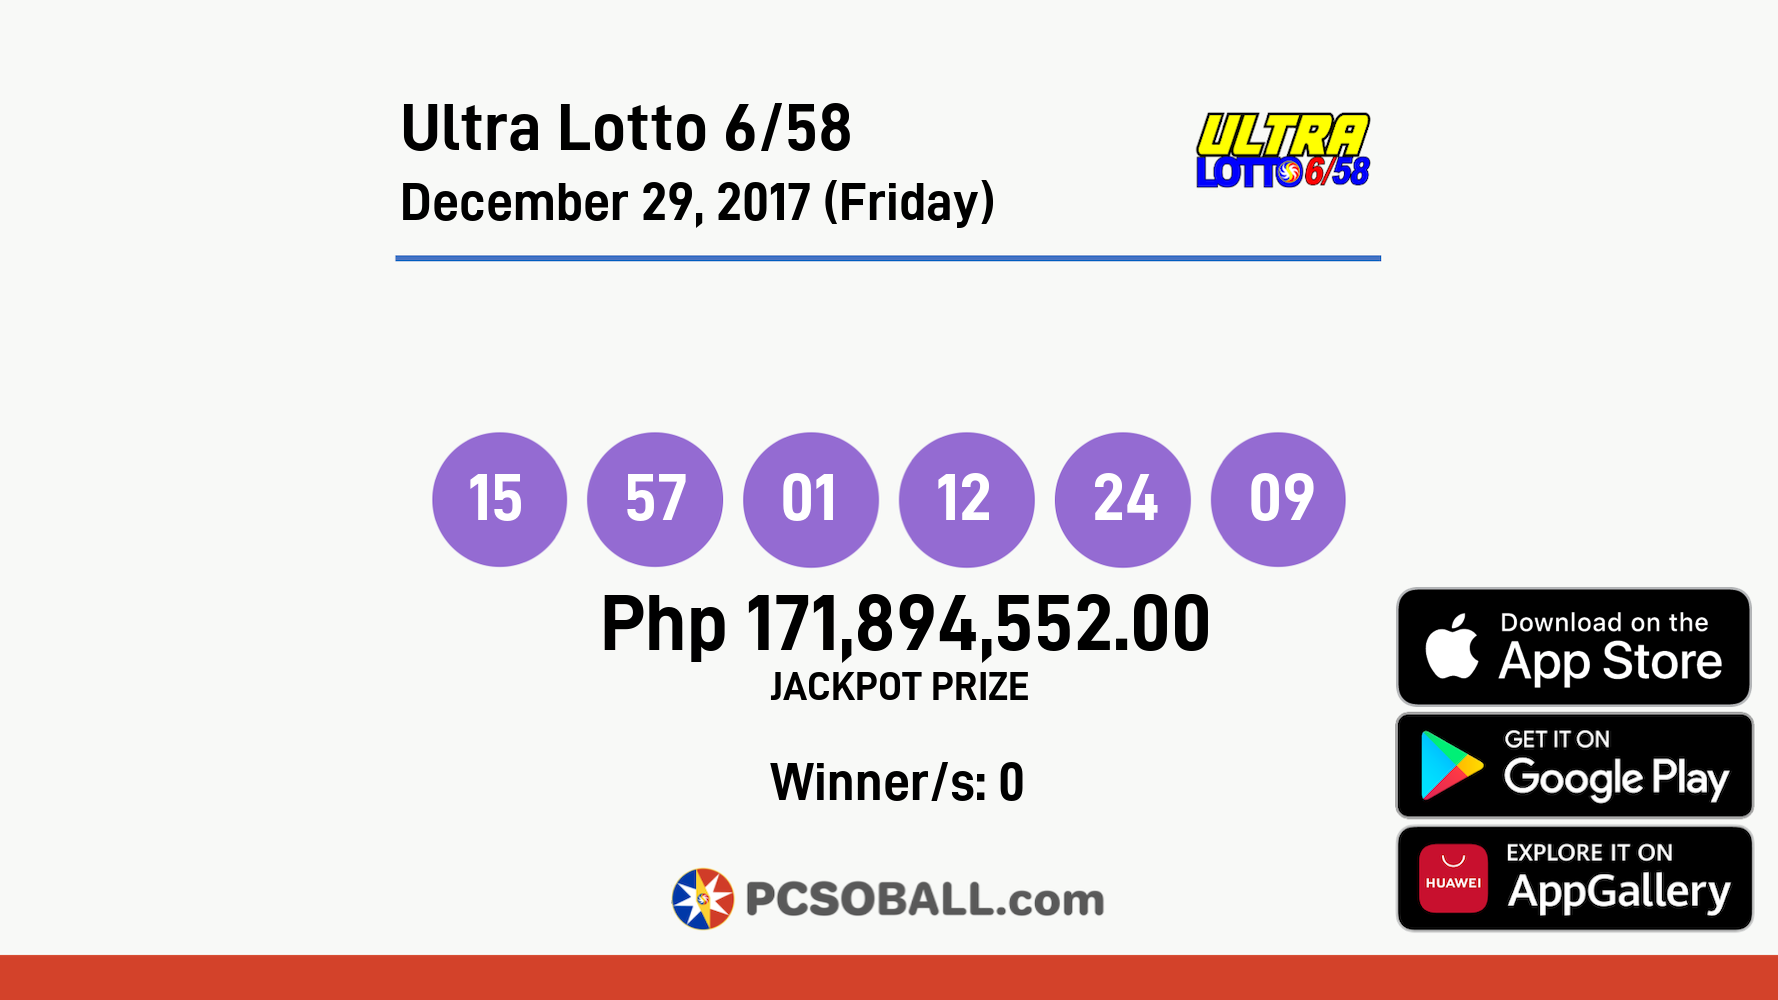 Ultra Lotto 6/58 December 29, 2017 (Friday) Result